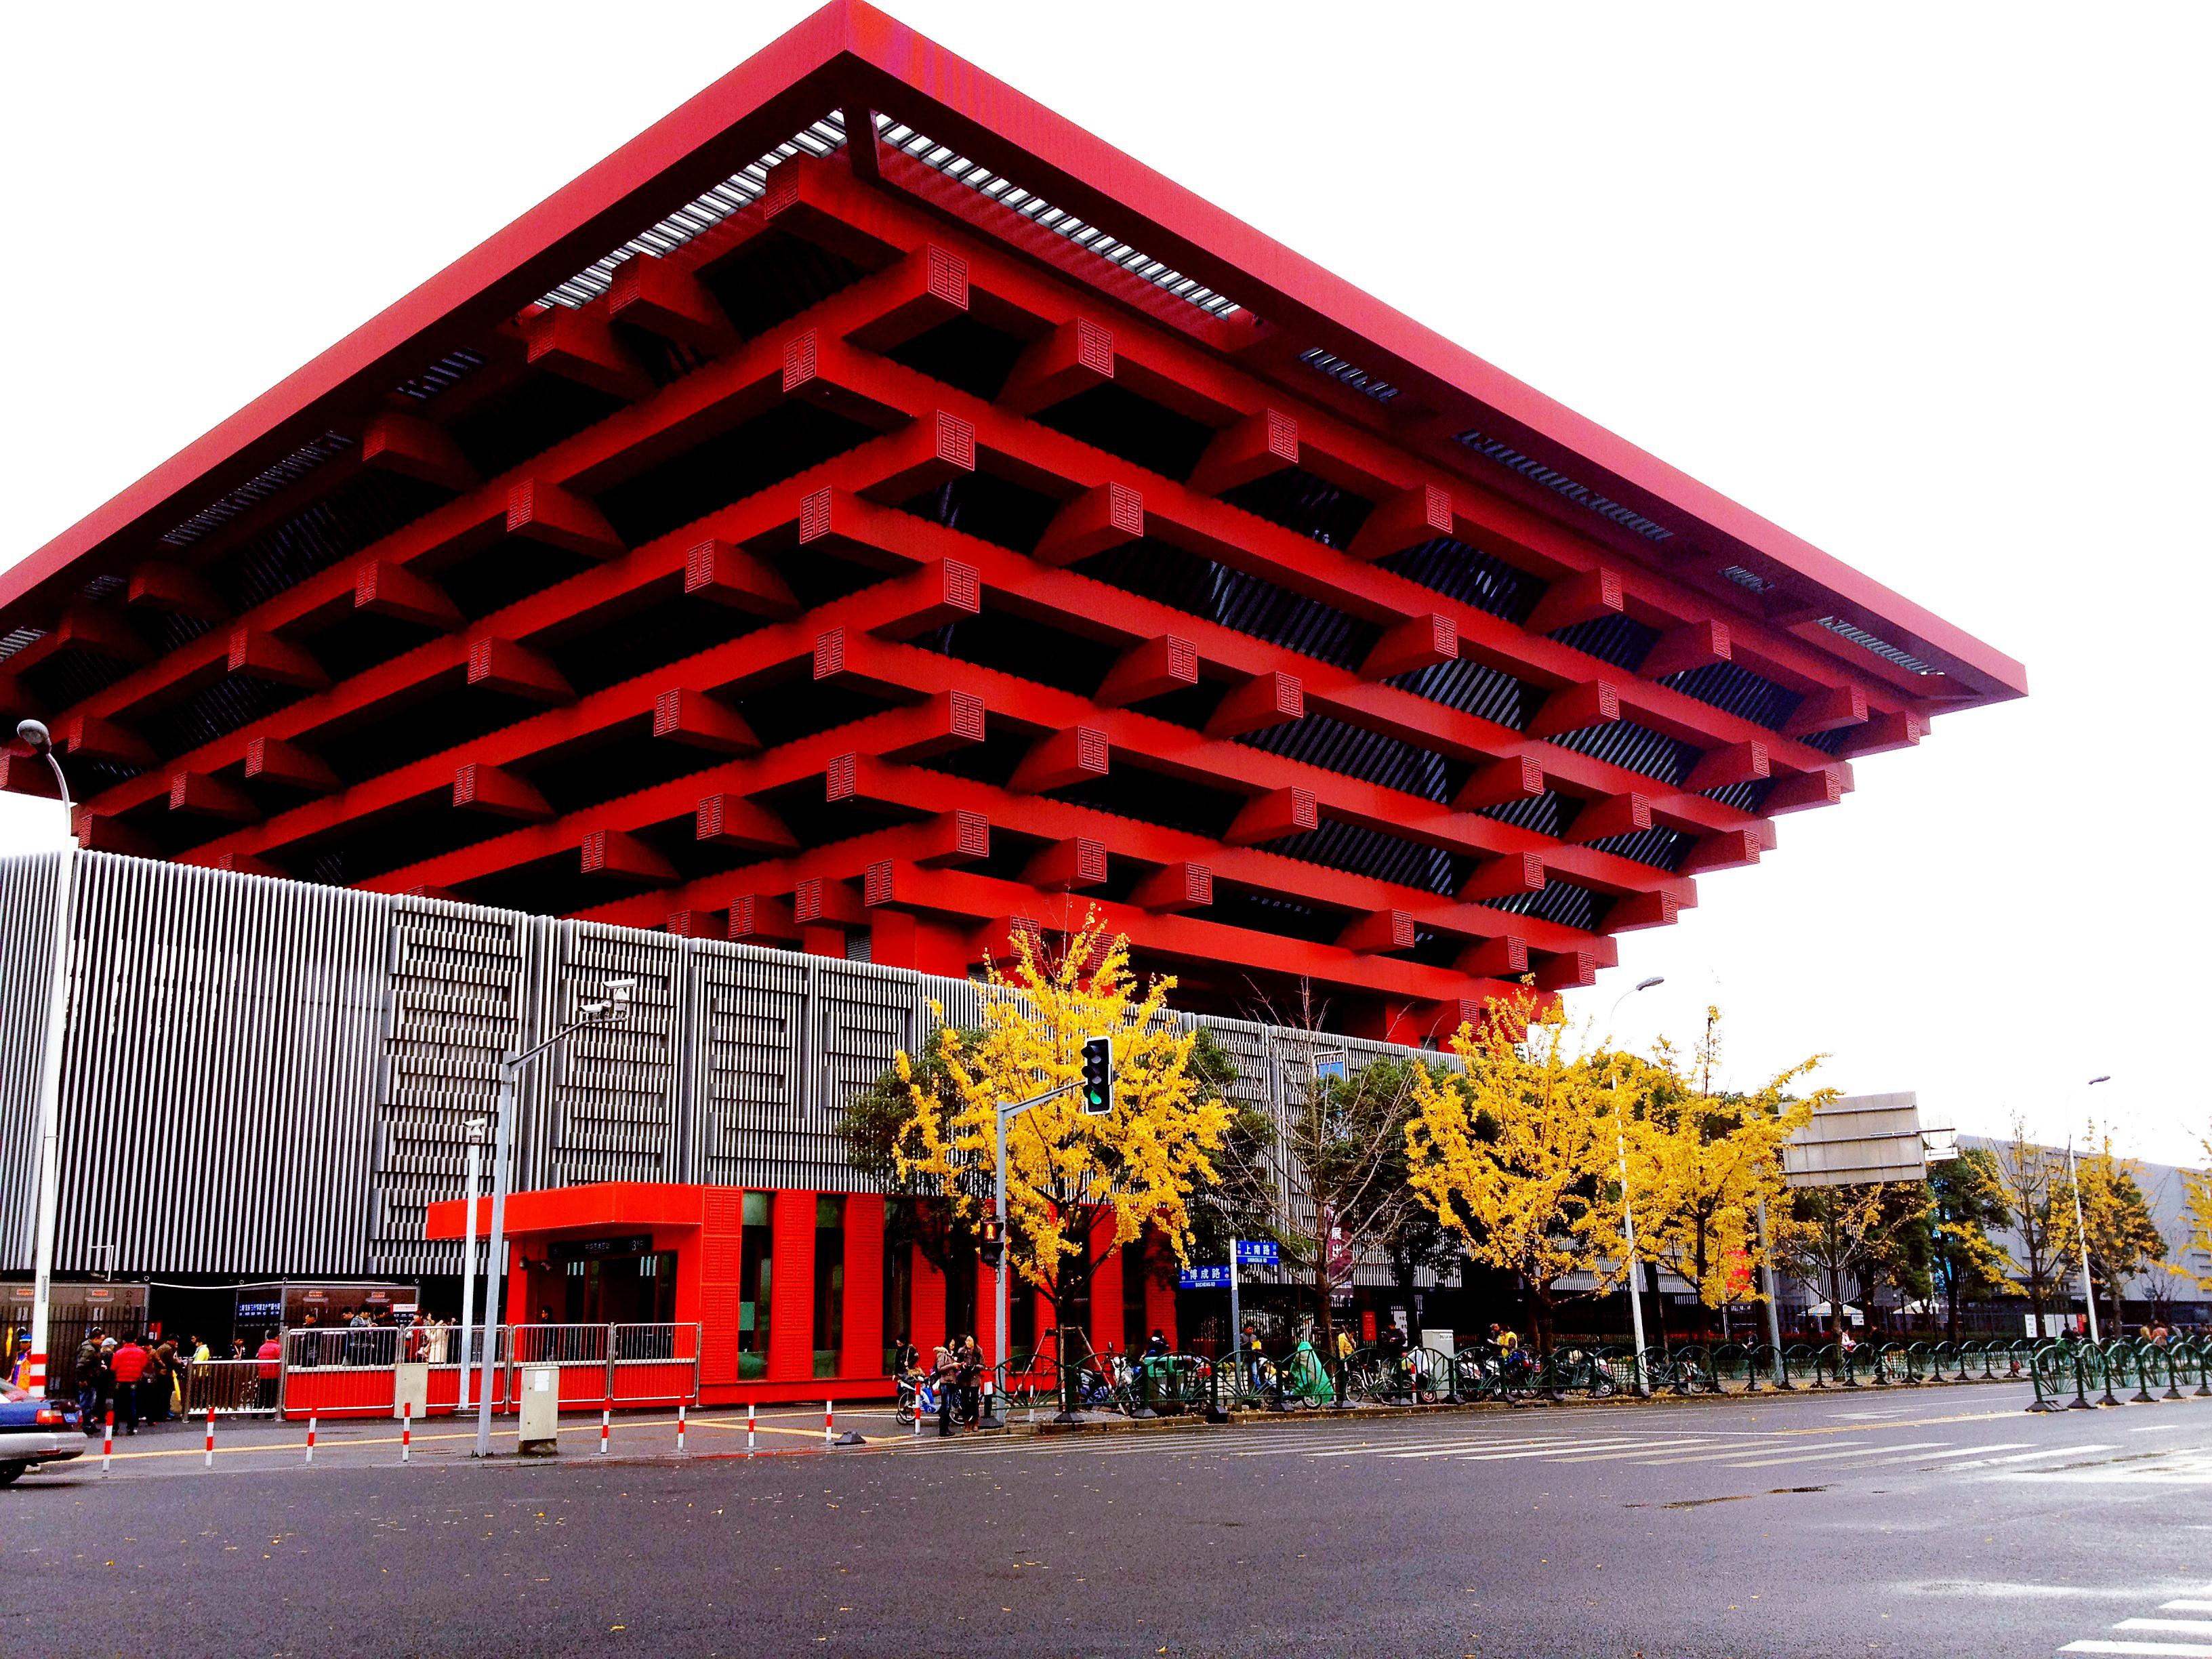 中华艺术宫坐落于上海市区黄浦江南岸,曾是2010年上海世博会被称为